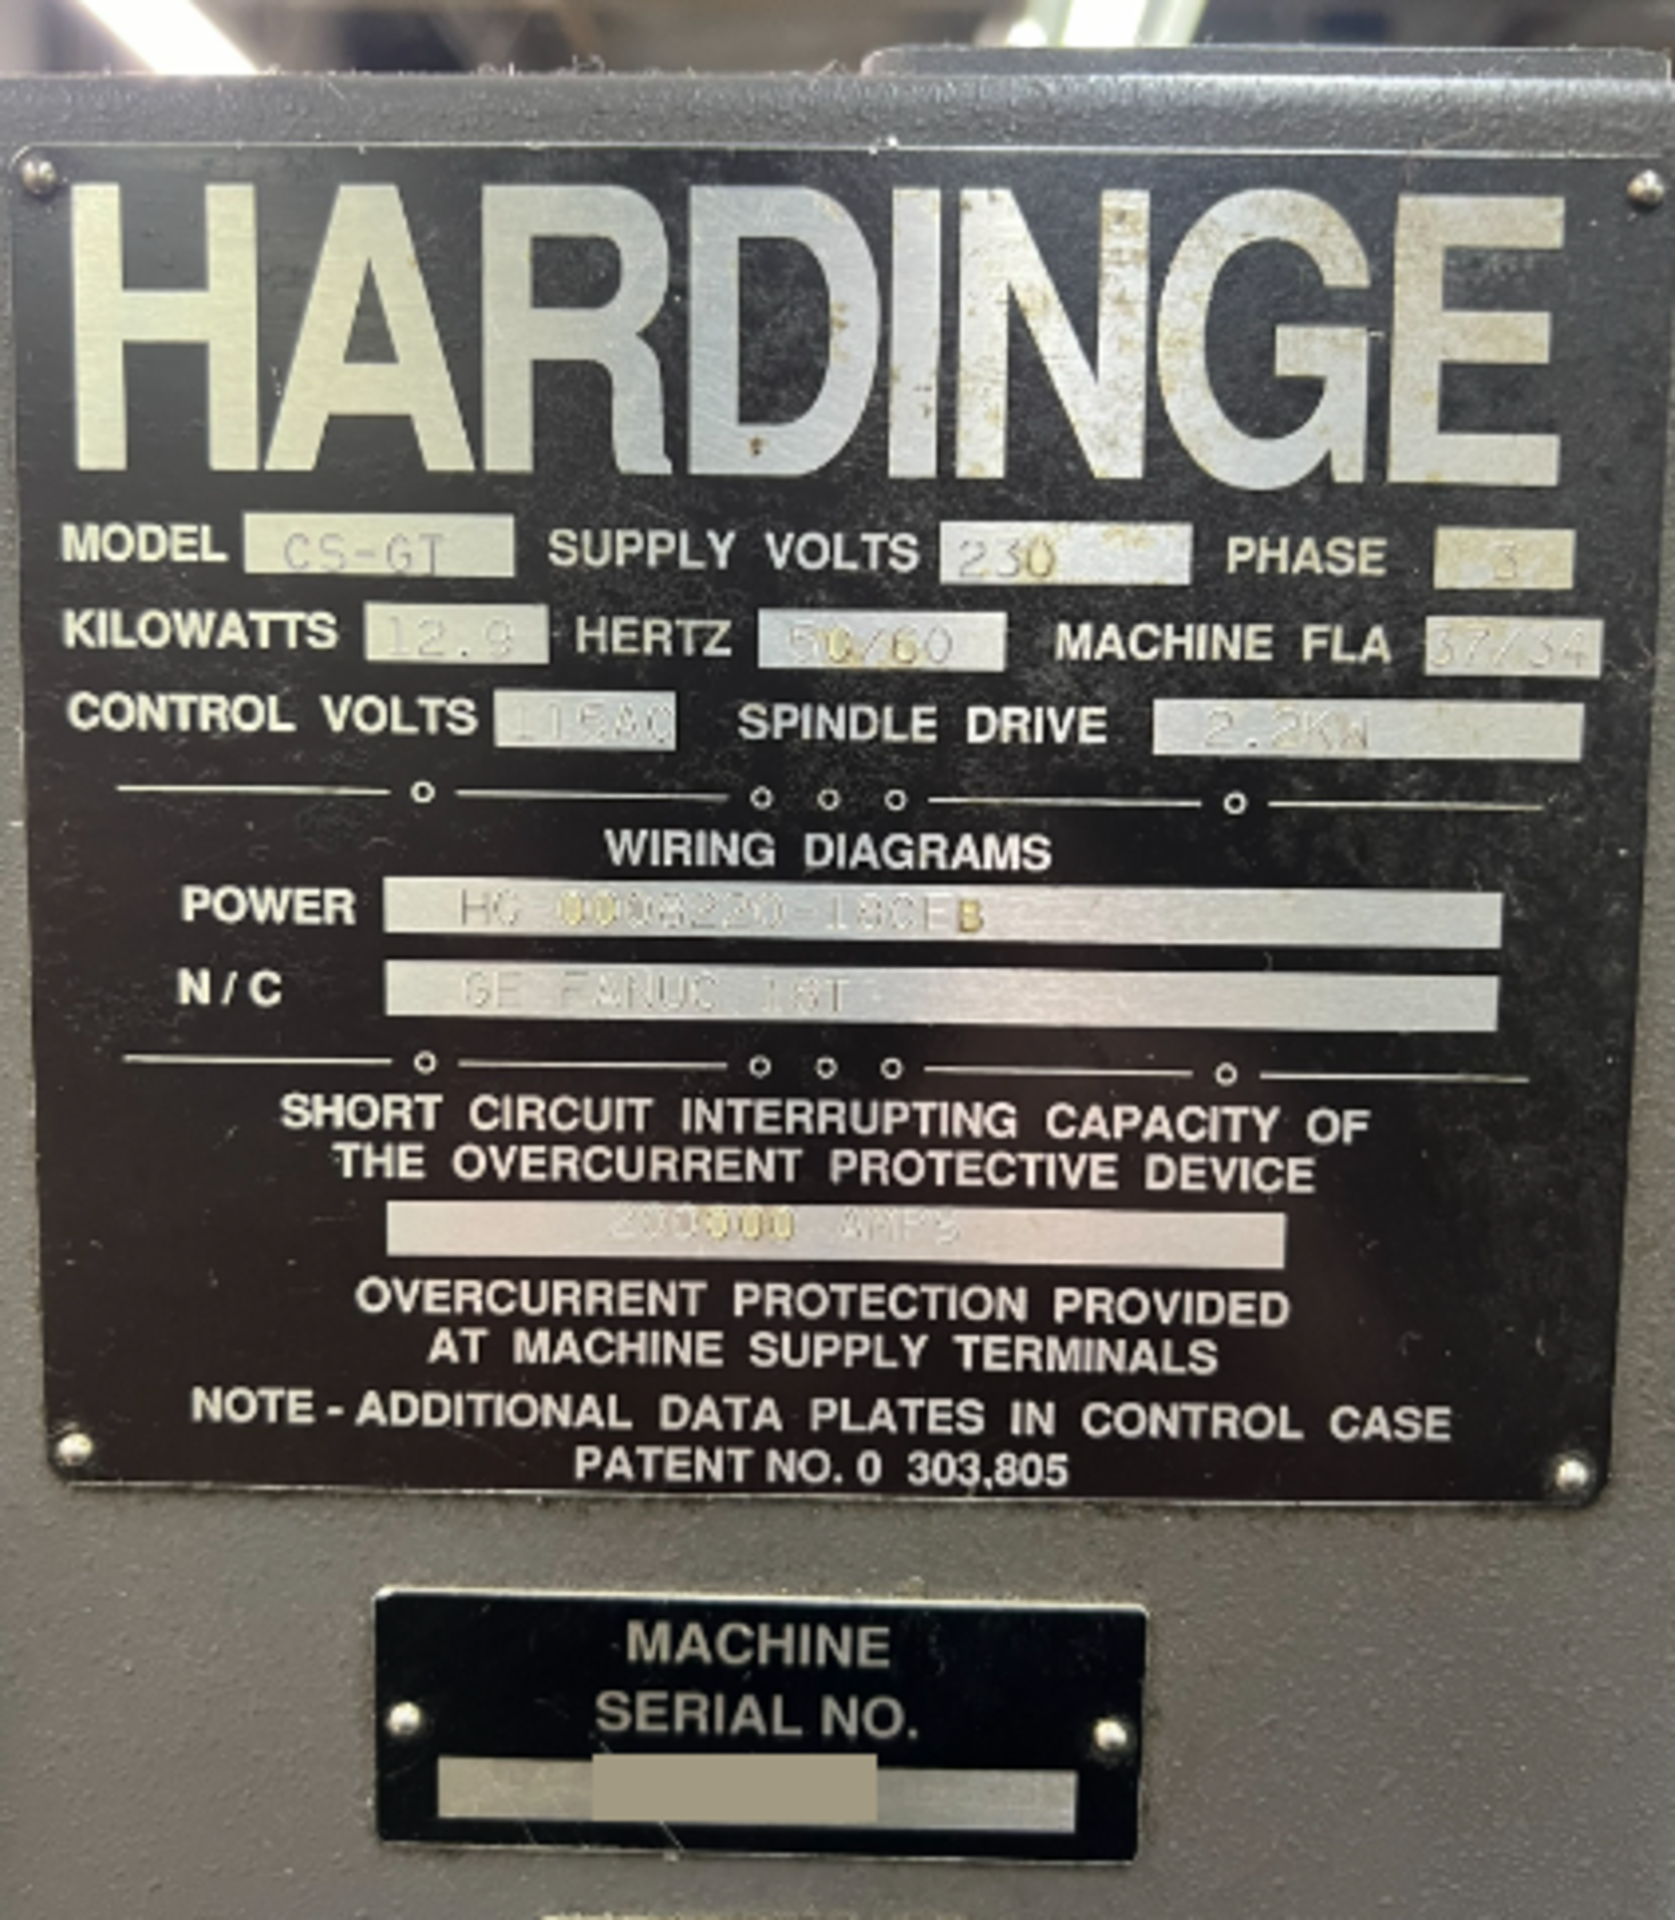 1997 Hardinge GT27-1, CNC Gang Lathe - Image 8 of 13